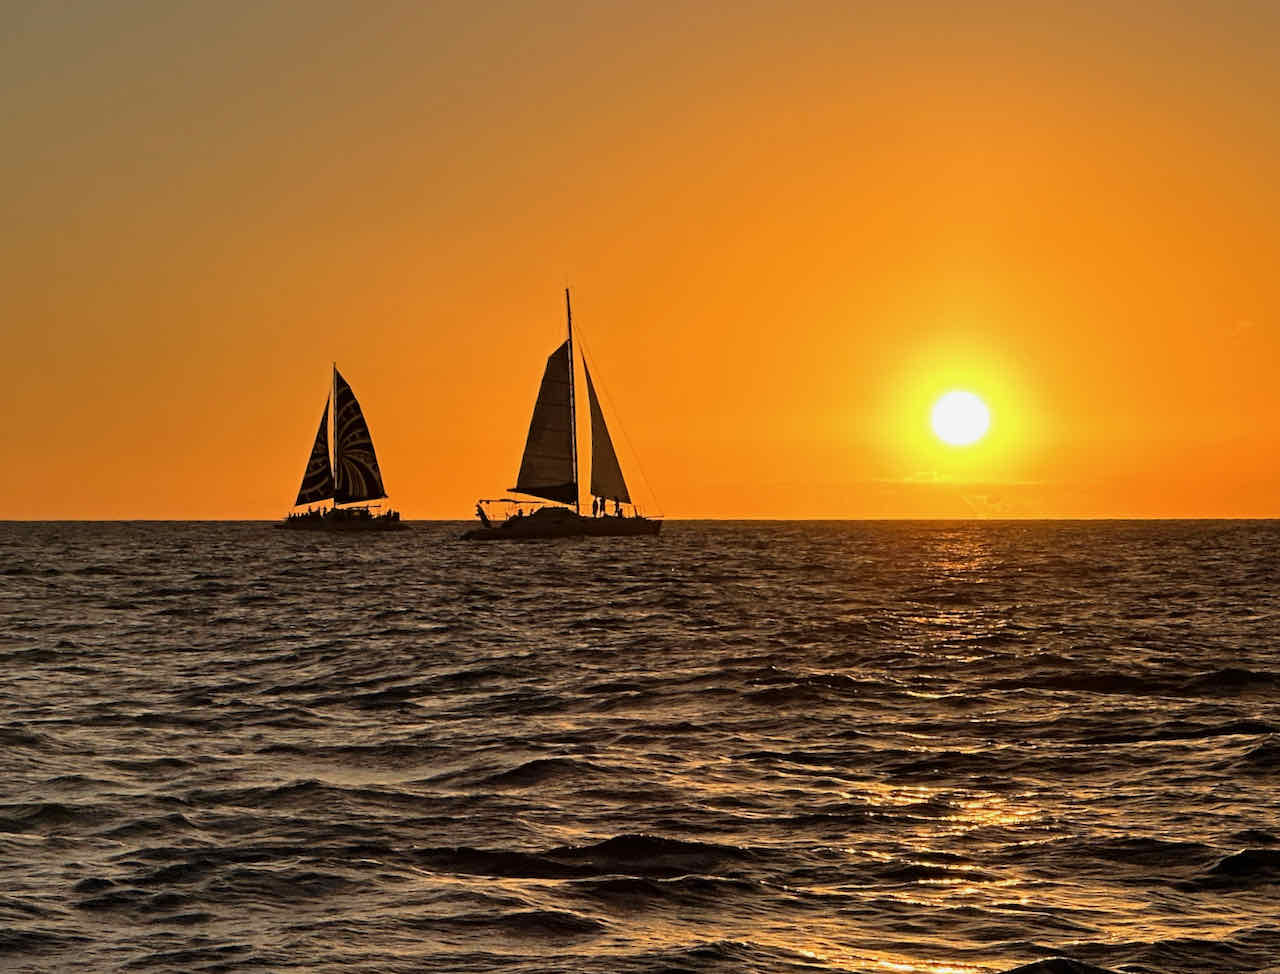 Saiboats at sunset Waikiki